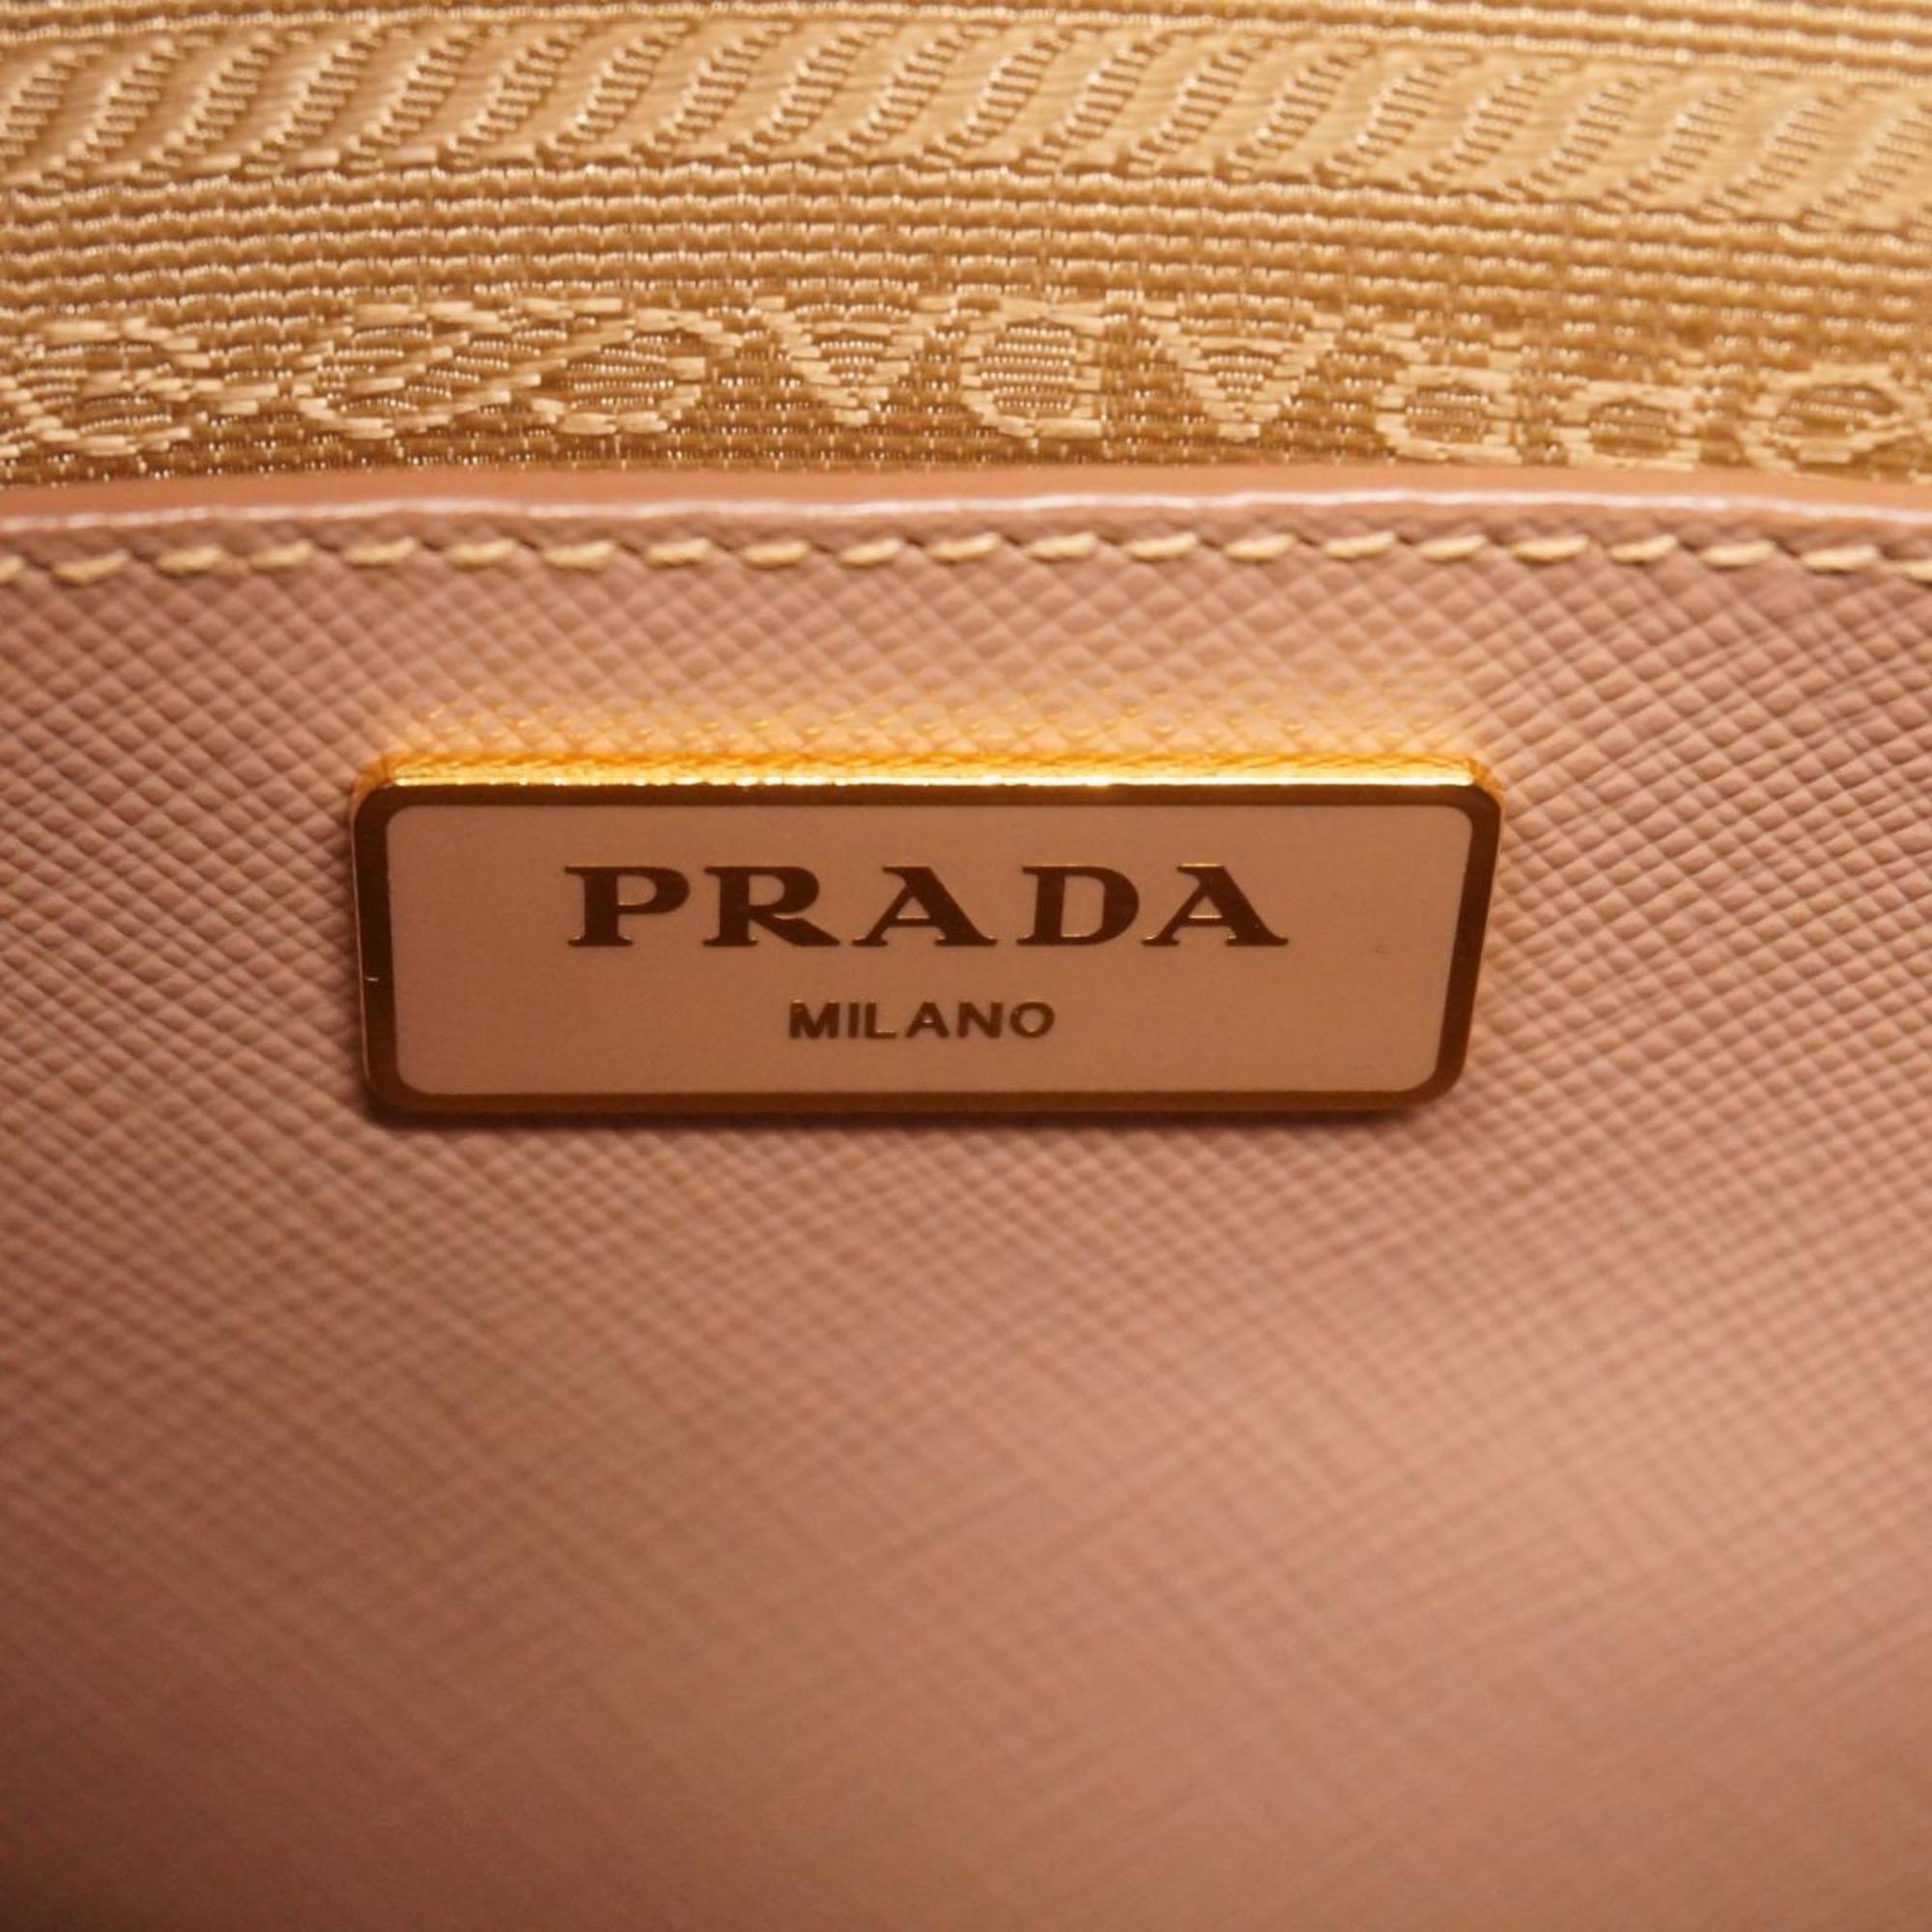 プラダ(Prada) プラダ ハンドバッグ サフィアーノ レザー ピンク   レディース